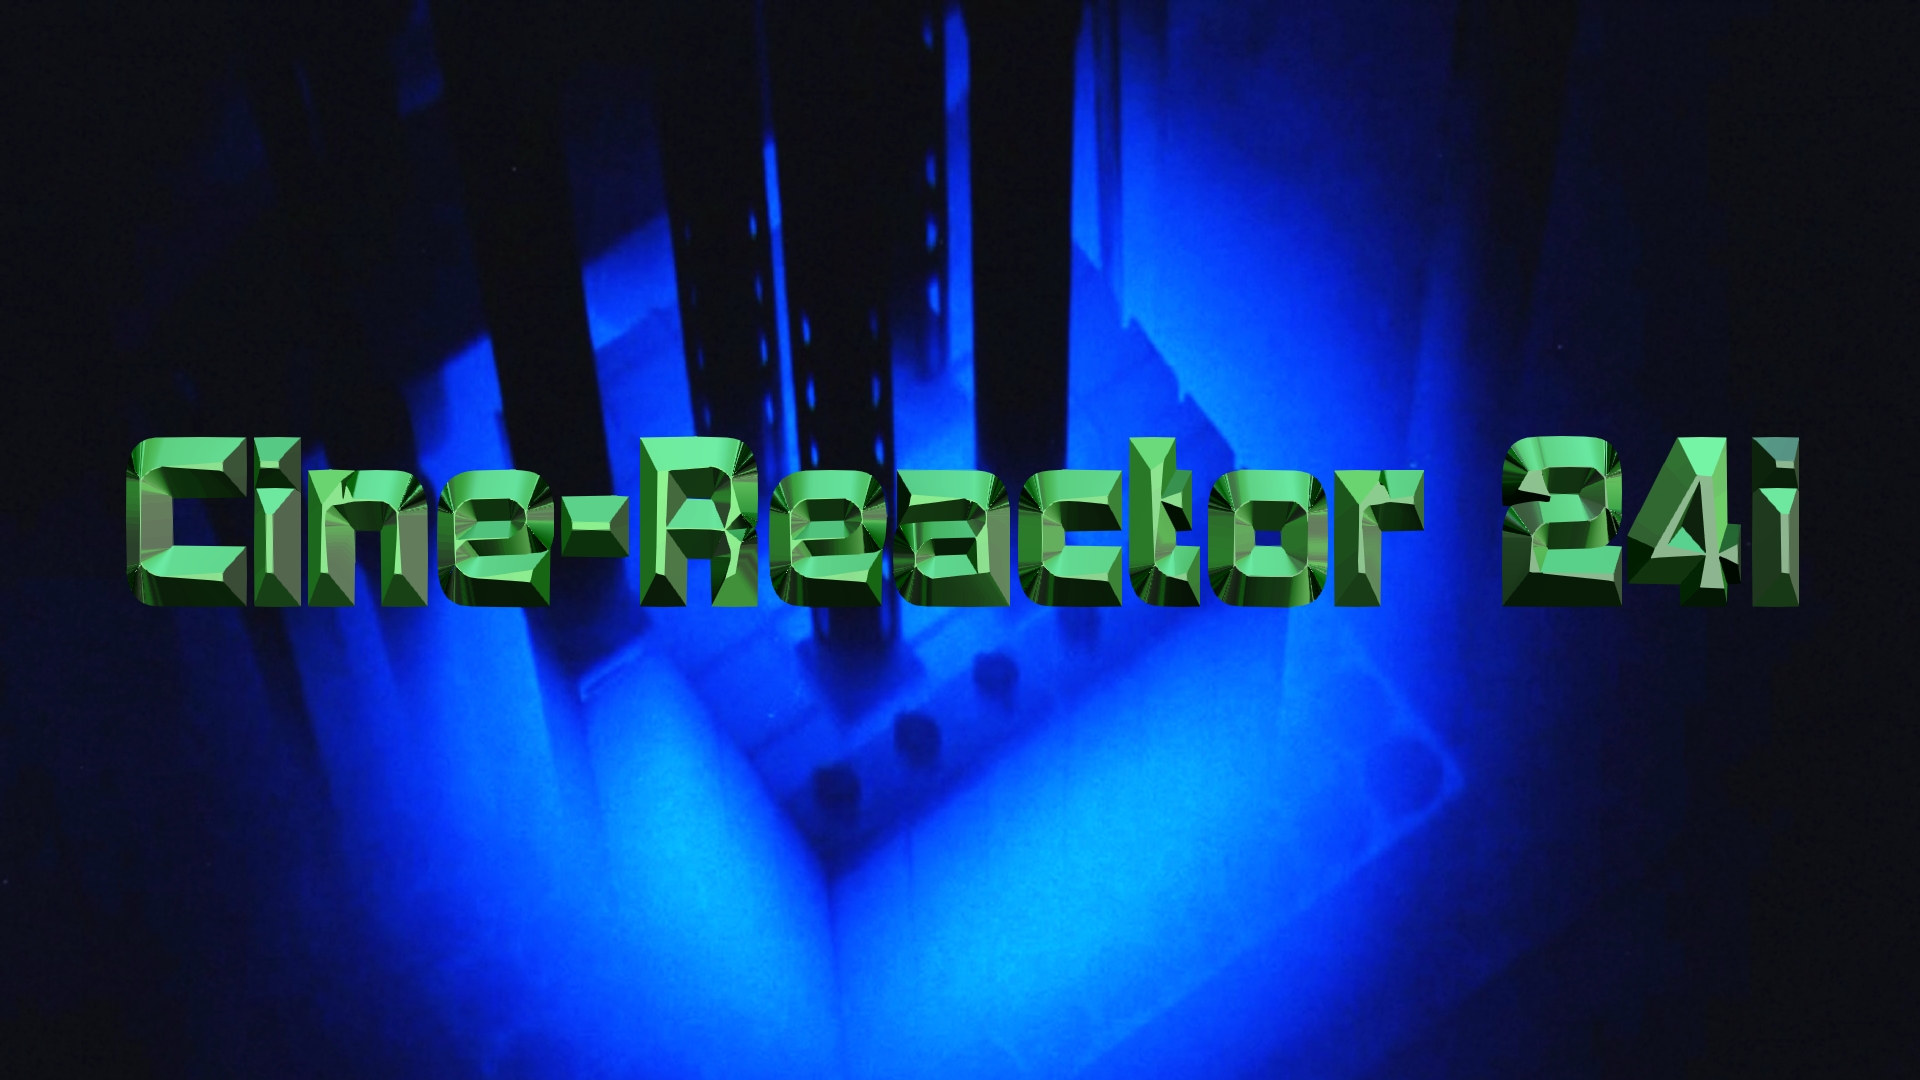 cine-reactor 24i